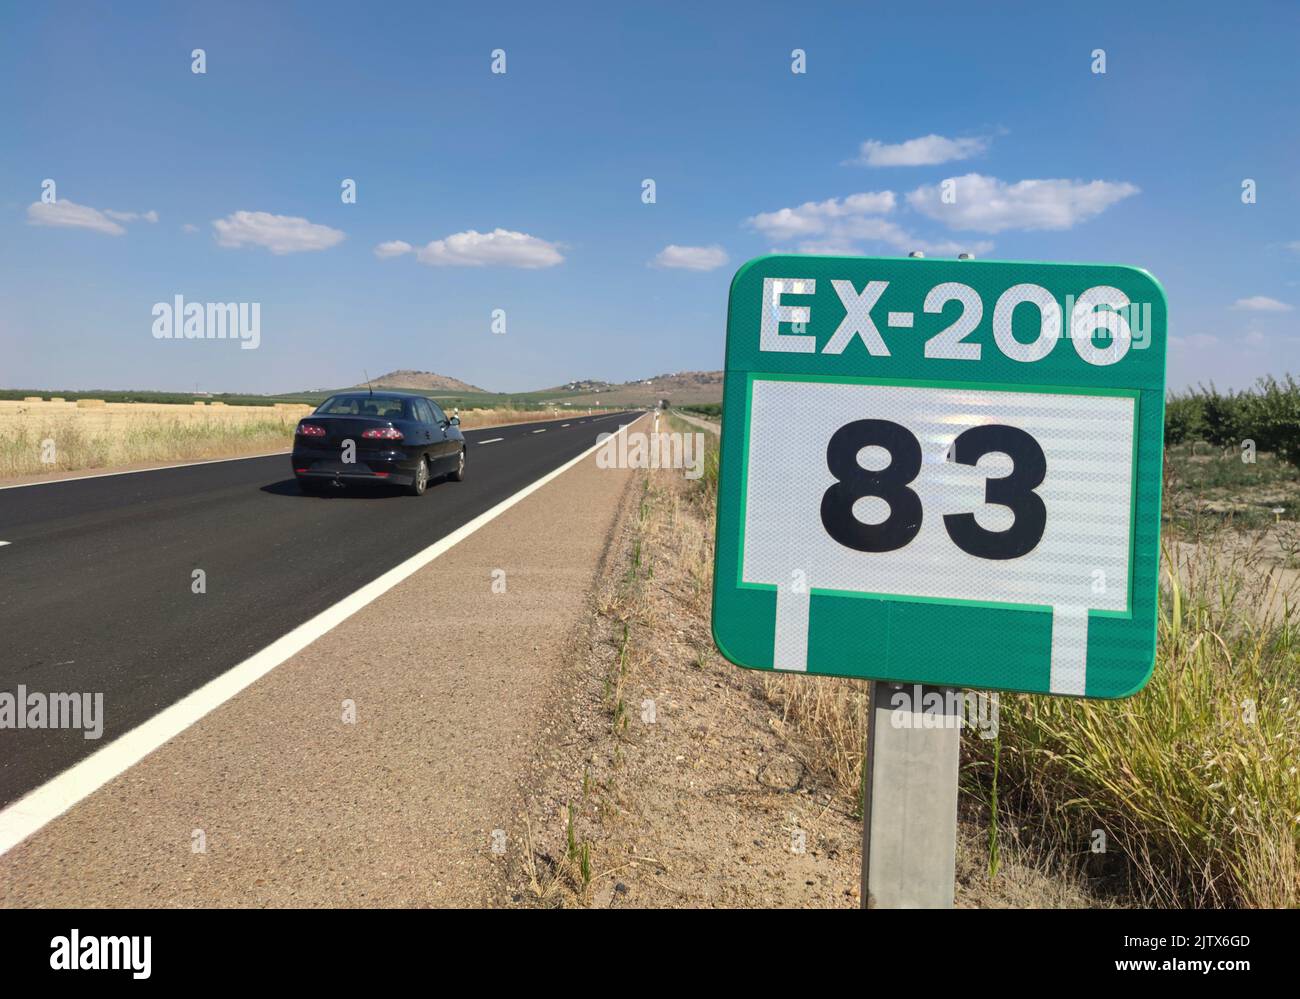 EX-303 segnaletica stradale. Autostrada interregionale che si estende da Caceres a Villanueva de la Serena, Estremadura, Spagna. Foto Stock